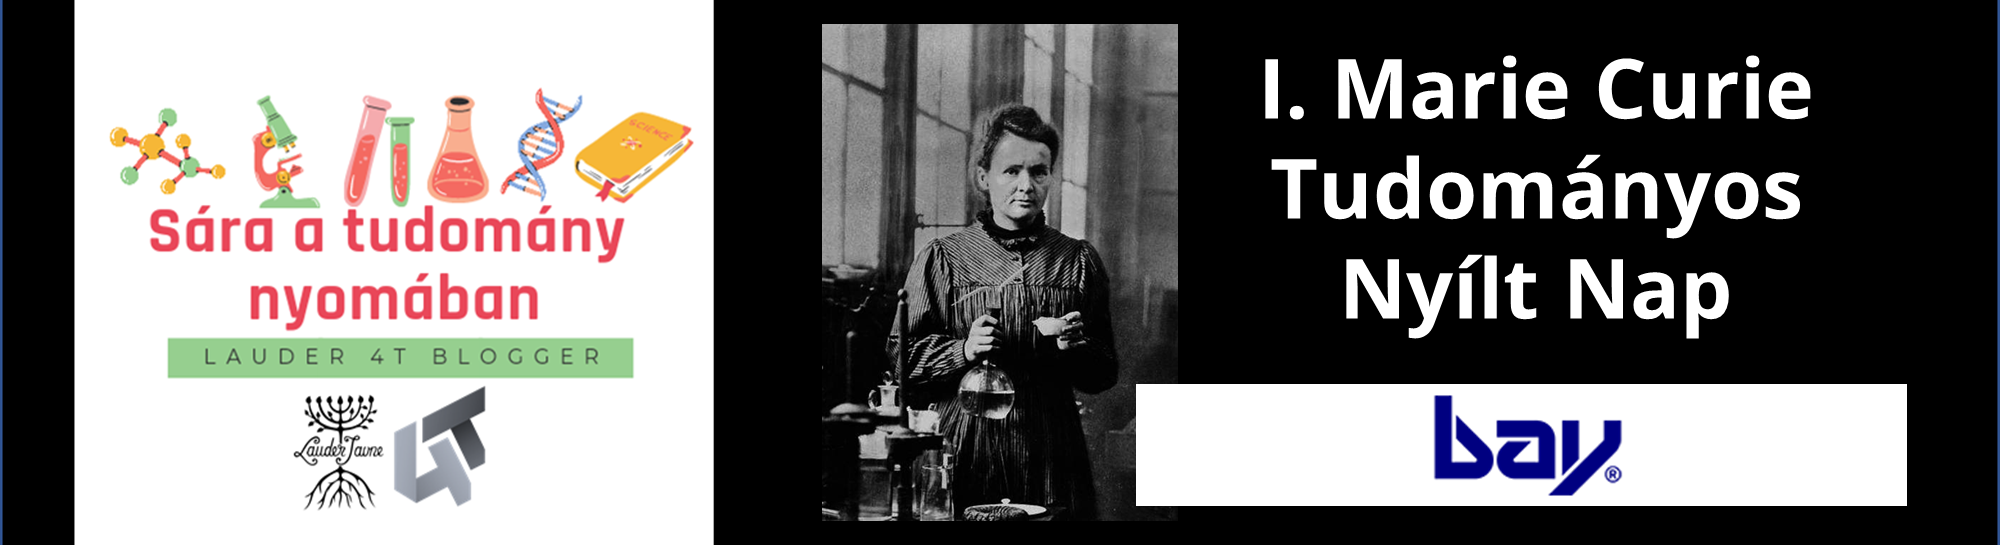 Kárpáti Sára: Élménybeszámoló a Marie Curie Tudományos Nyílt Napról